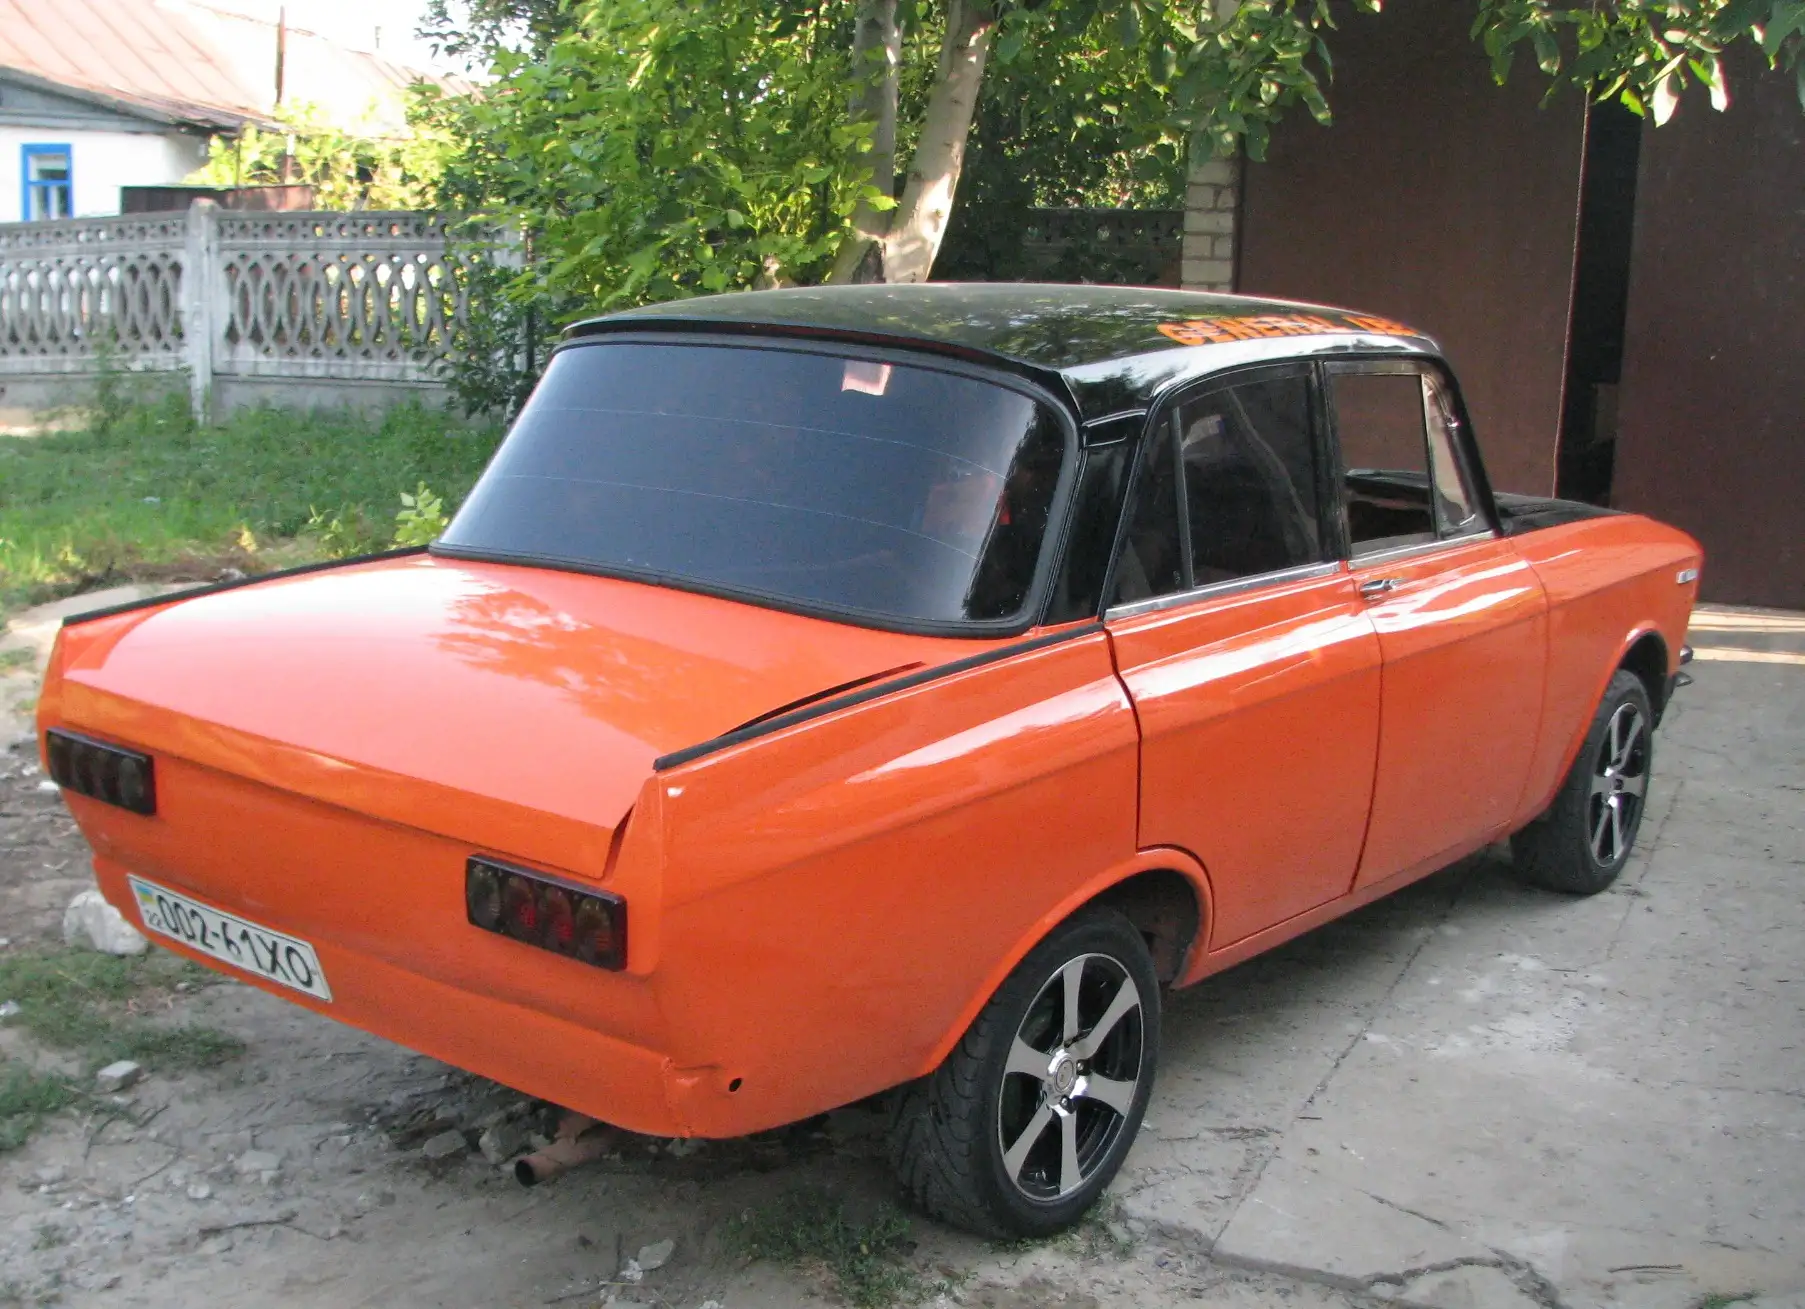 Тюнинг Москвича 412: сделаем старый автомобиль крутым